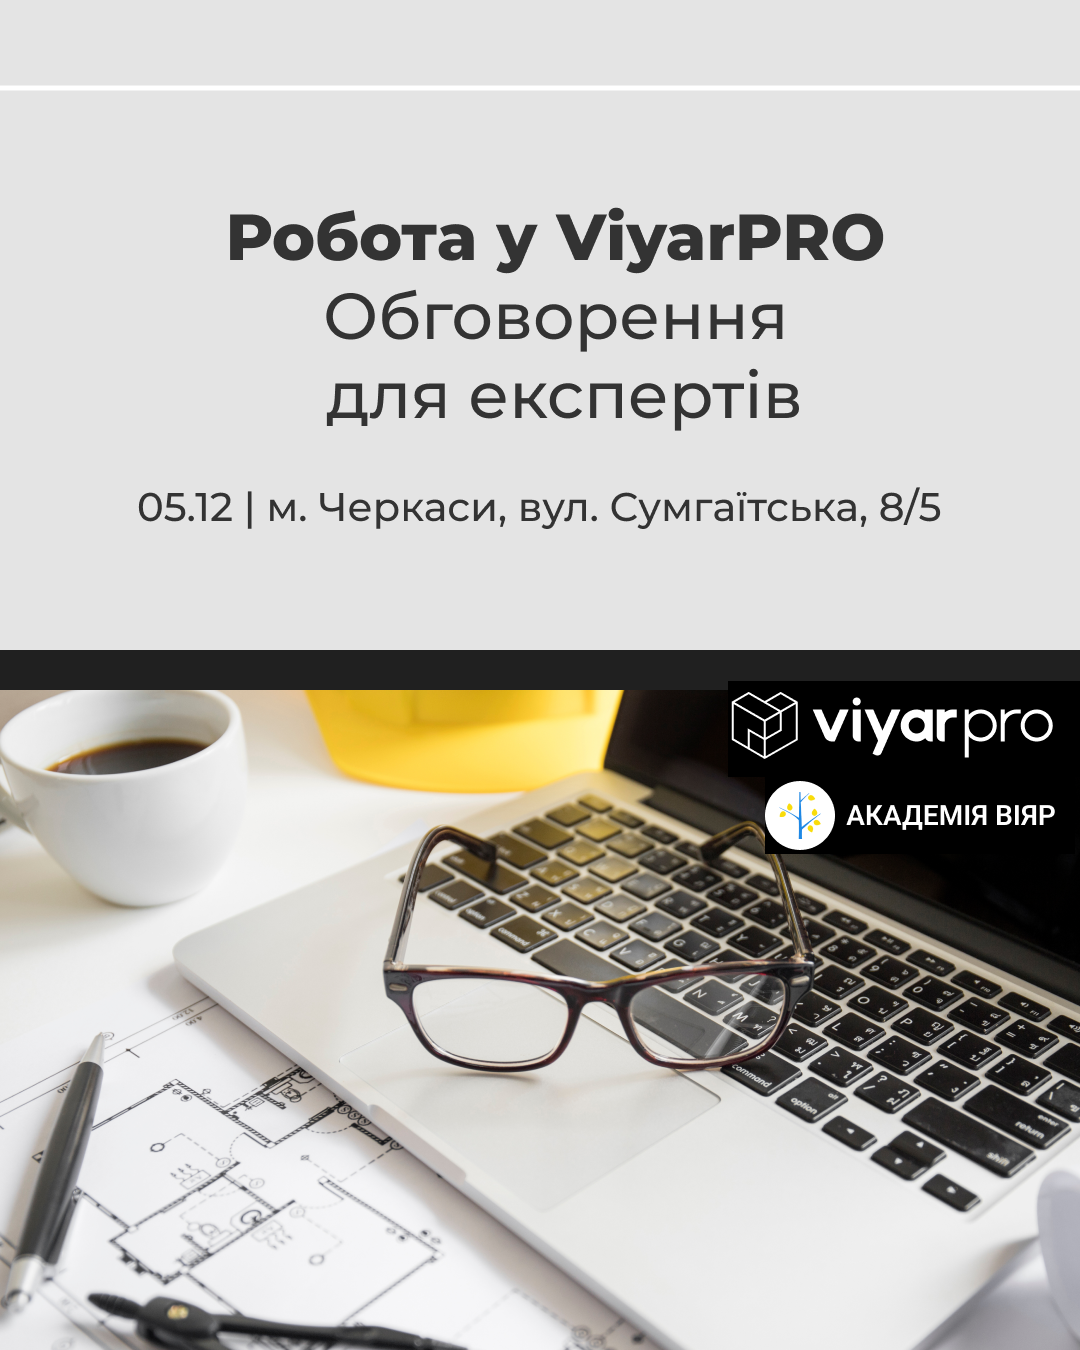 «Академія ВіЯр» 05/12: Робота у ViyarPRO – обговорення для експертів